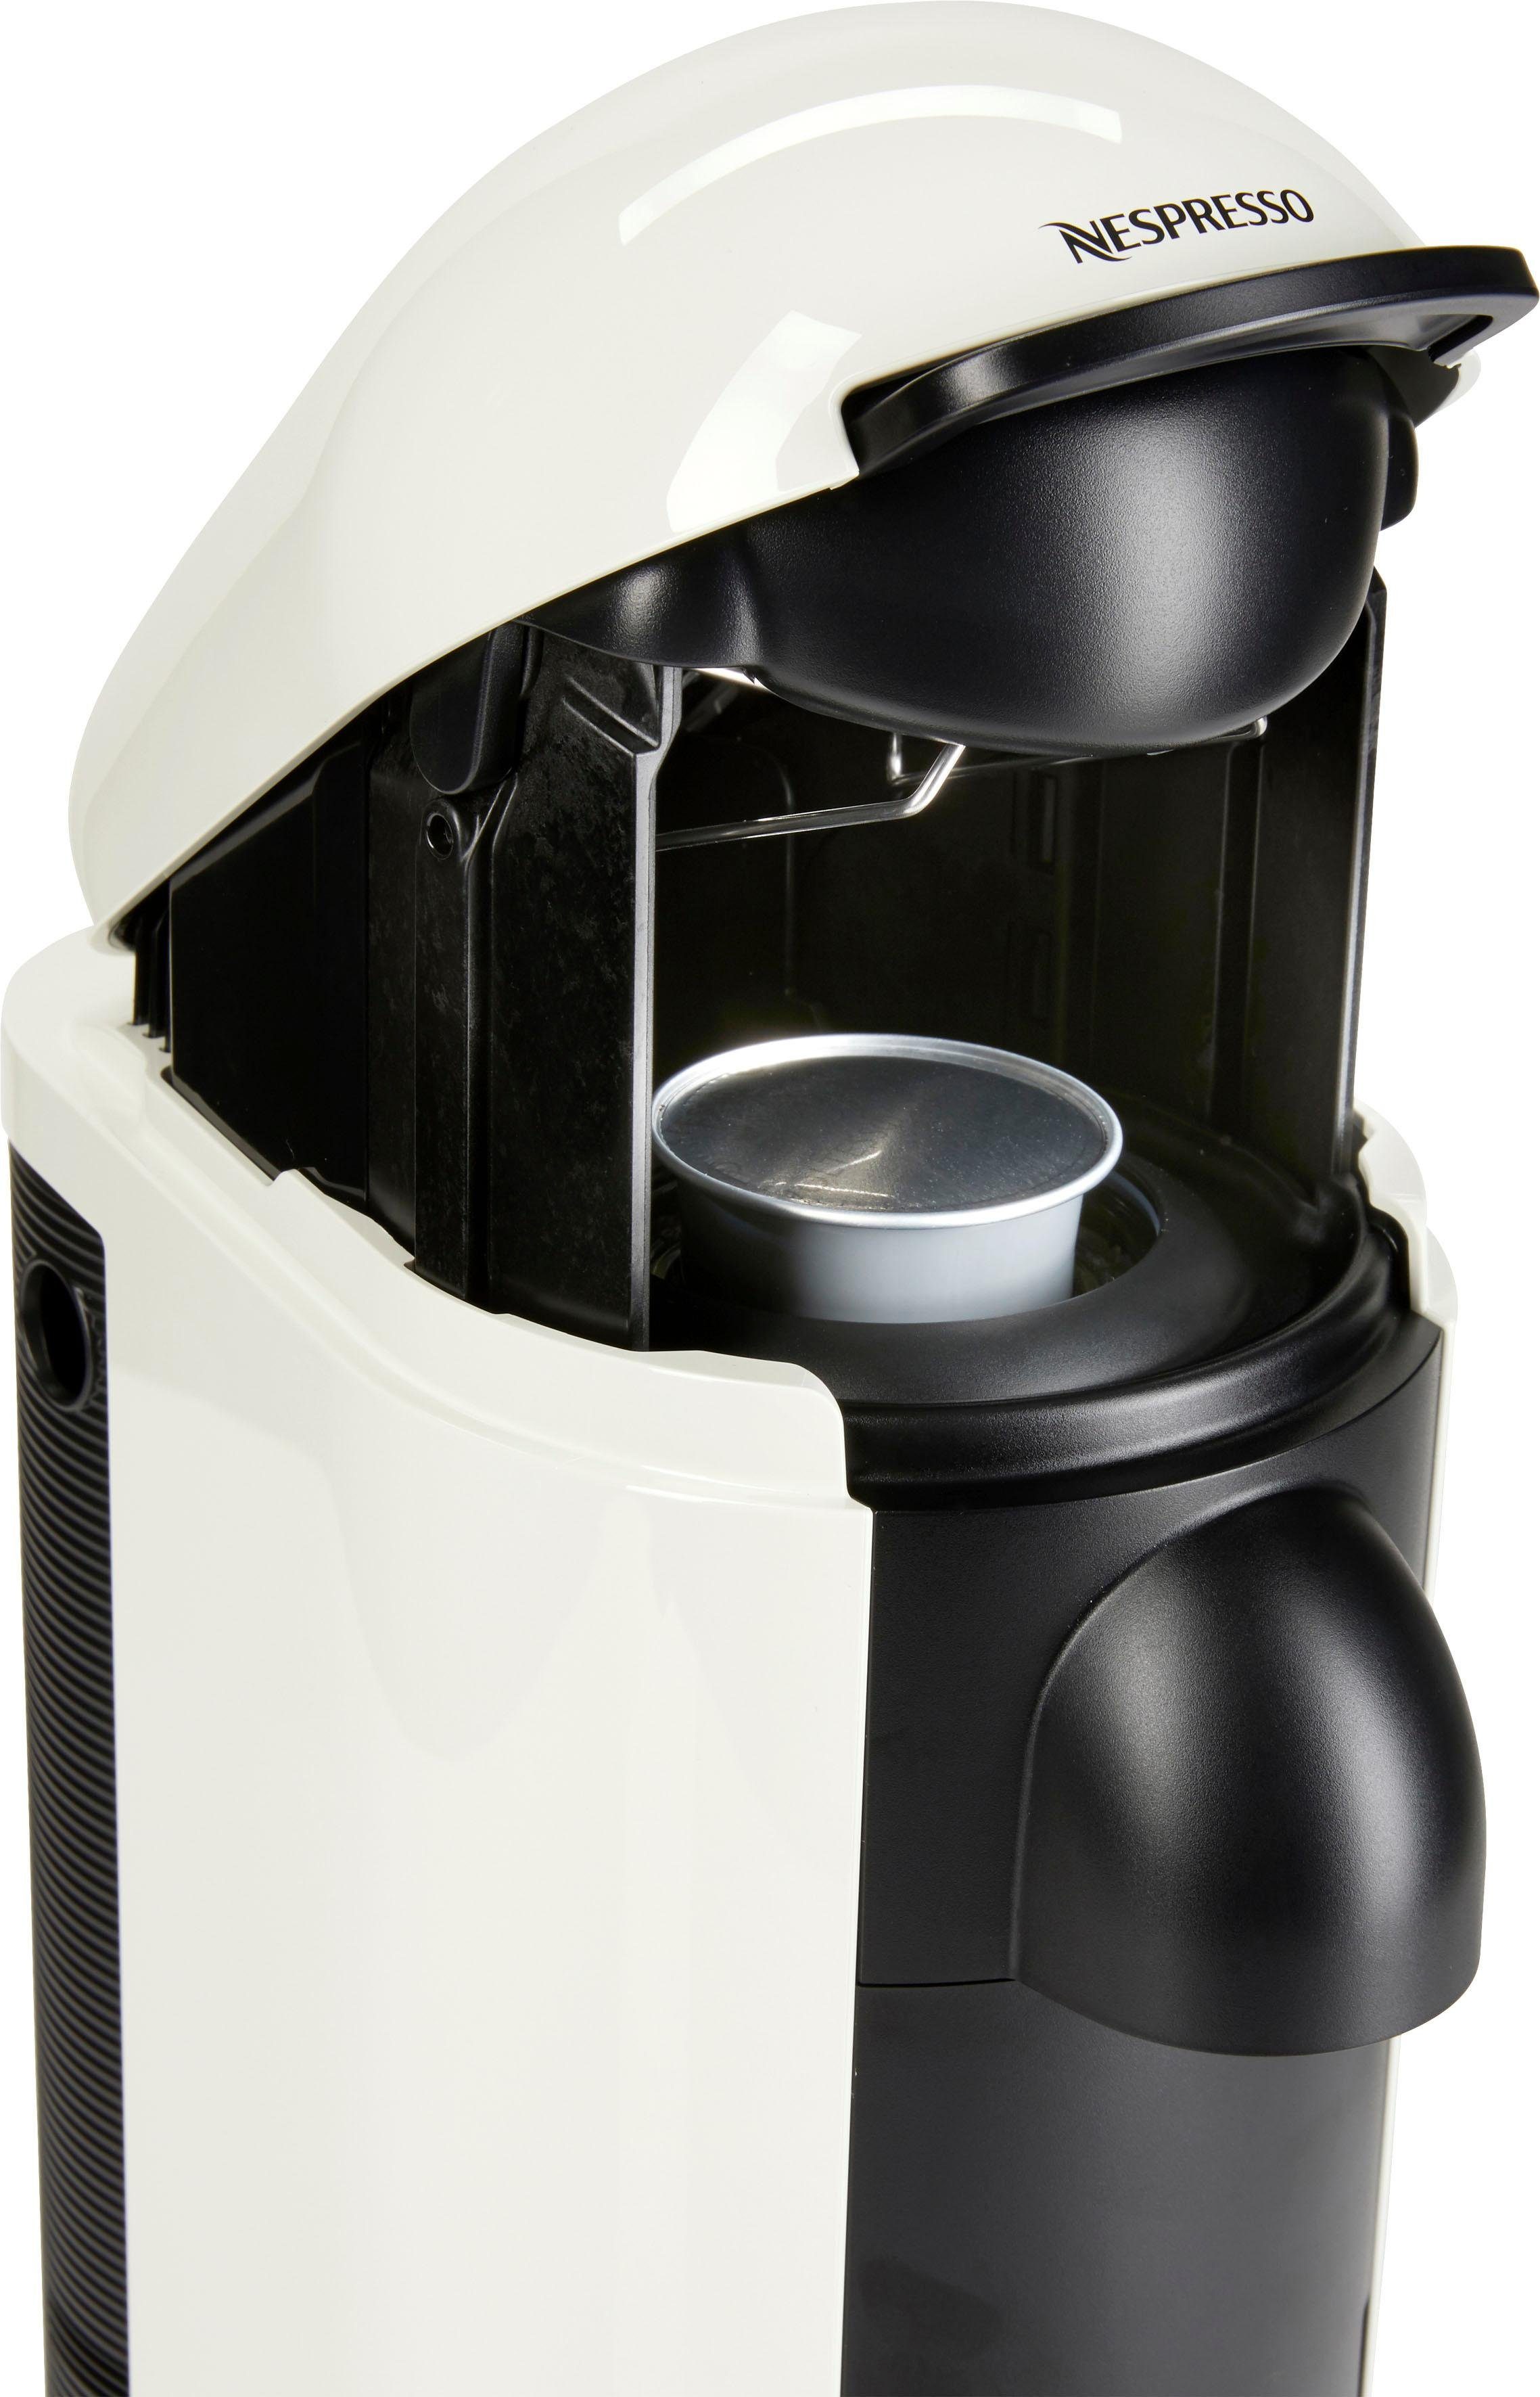 Nespresso Kapselmaschine XN9031 mit Krups, Kapselerkennung durch Kapseln Plus 12 von Vertuo Willkommenspaket inkl. Barcode